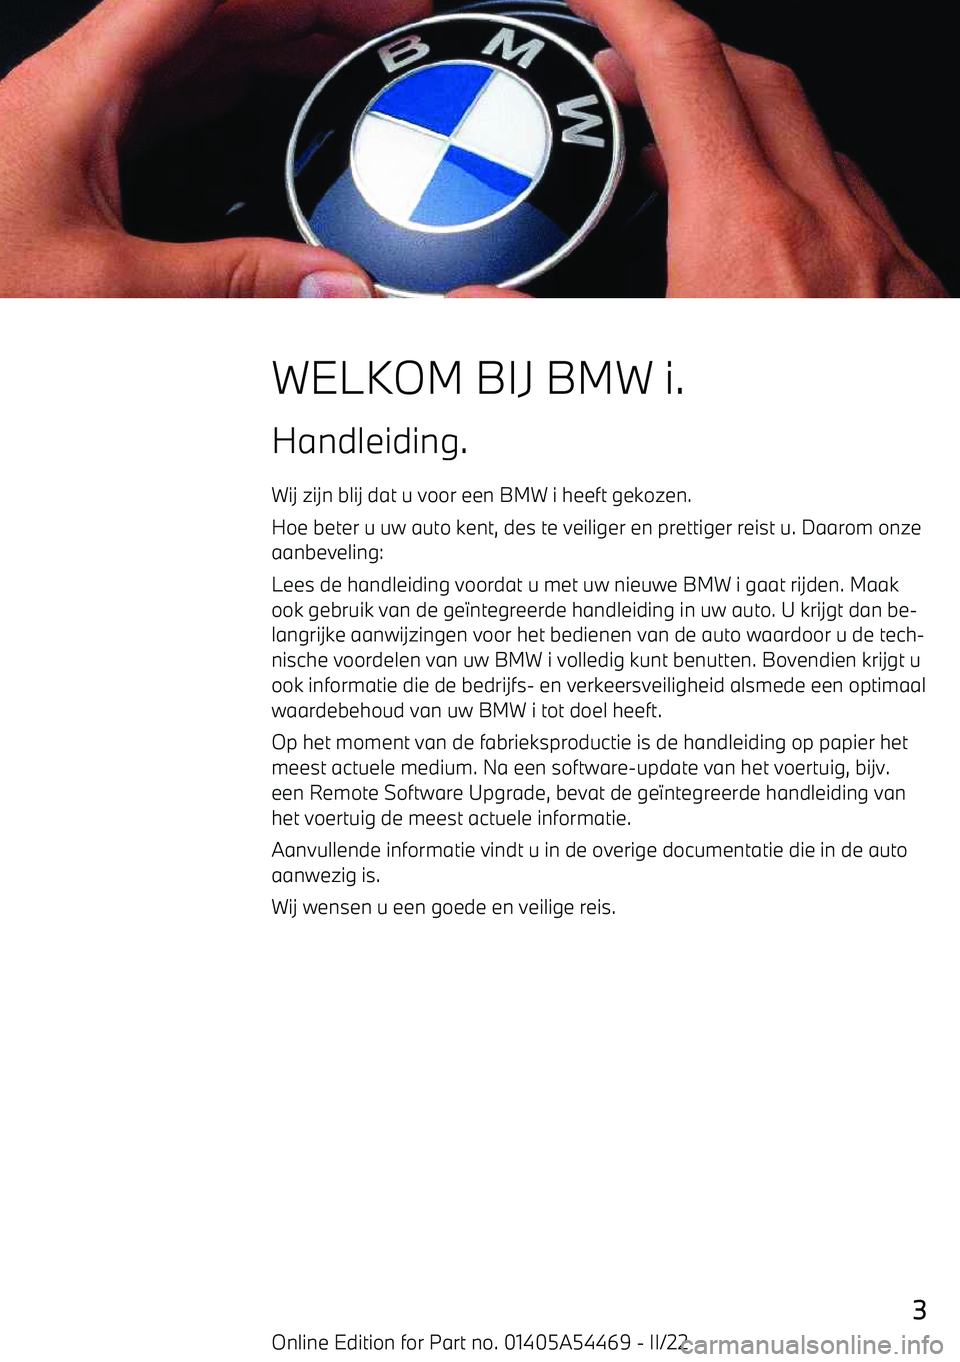 BMW IX 2022  Instructieboekjes (in Dutch) WELKOM BIJ BMW i.Handleiding.
Wij zijn blij dat u voor een BMW i heeft gekozen.
Hoe beter u uw auto kent, des te veiliger en prettiger reist u. Daarom onze aanbeveling:
Lees de handleiding voordat u m